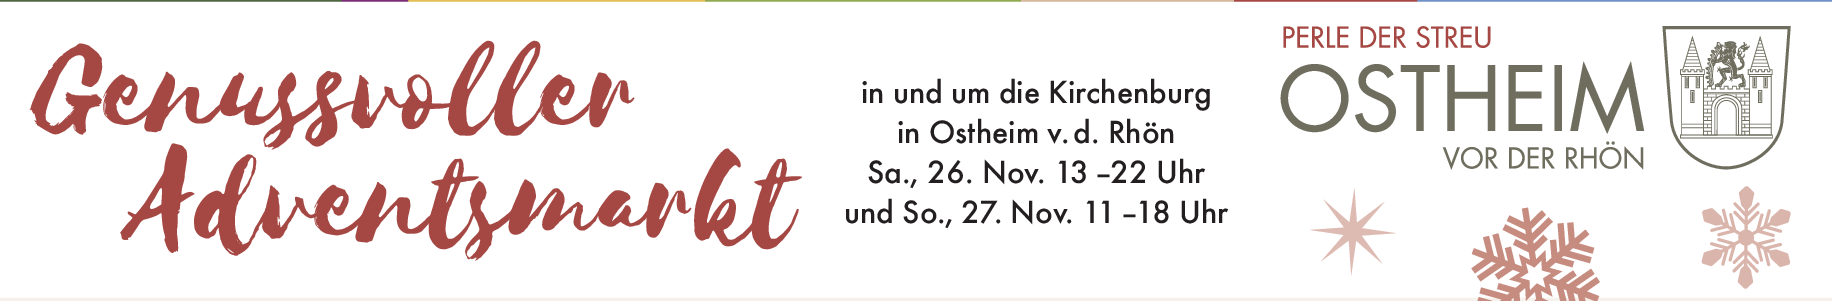 Genussvoller Adventsmarkt in und um die Kirchenburg in Ostheim v.d. Rhön Sa., 26. Nov. 13 -22 Uhr und So., 27. Nov. 11-18 Uhr